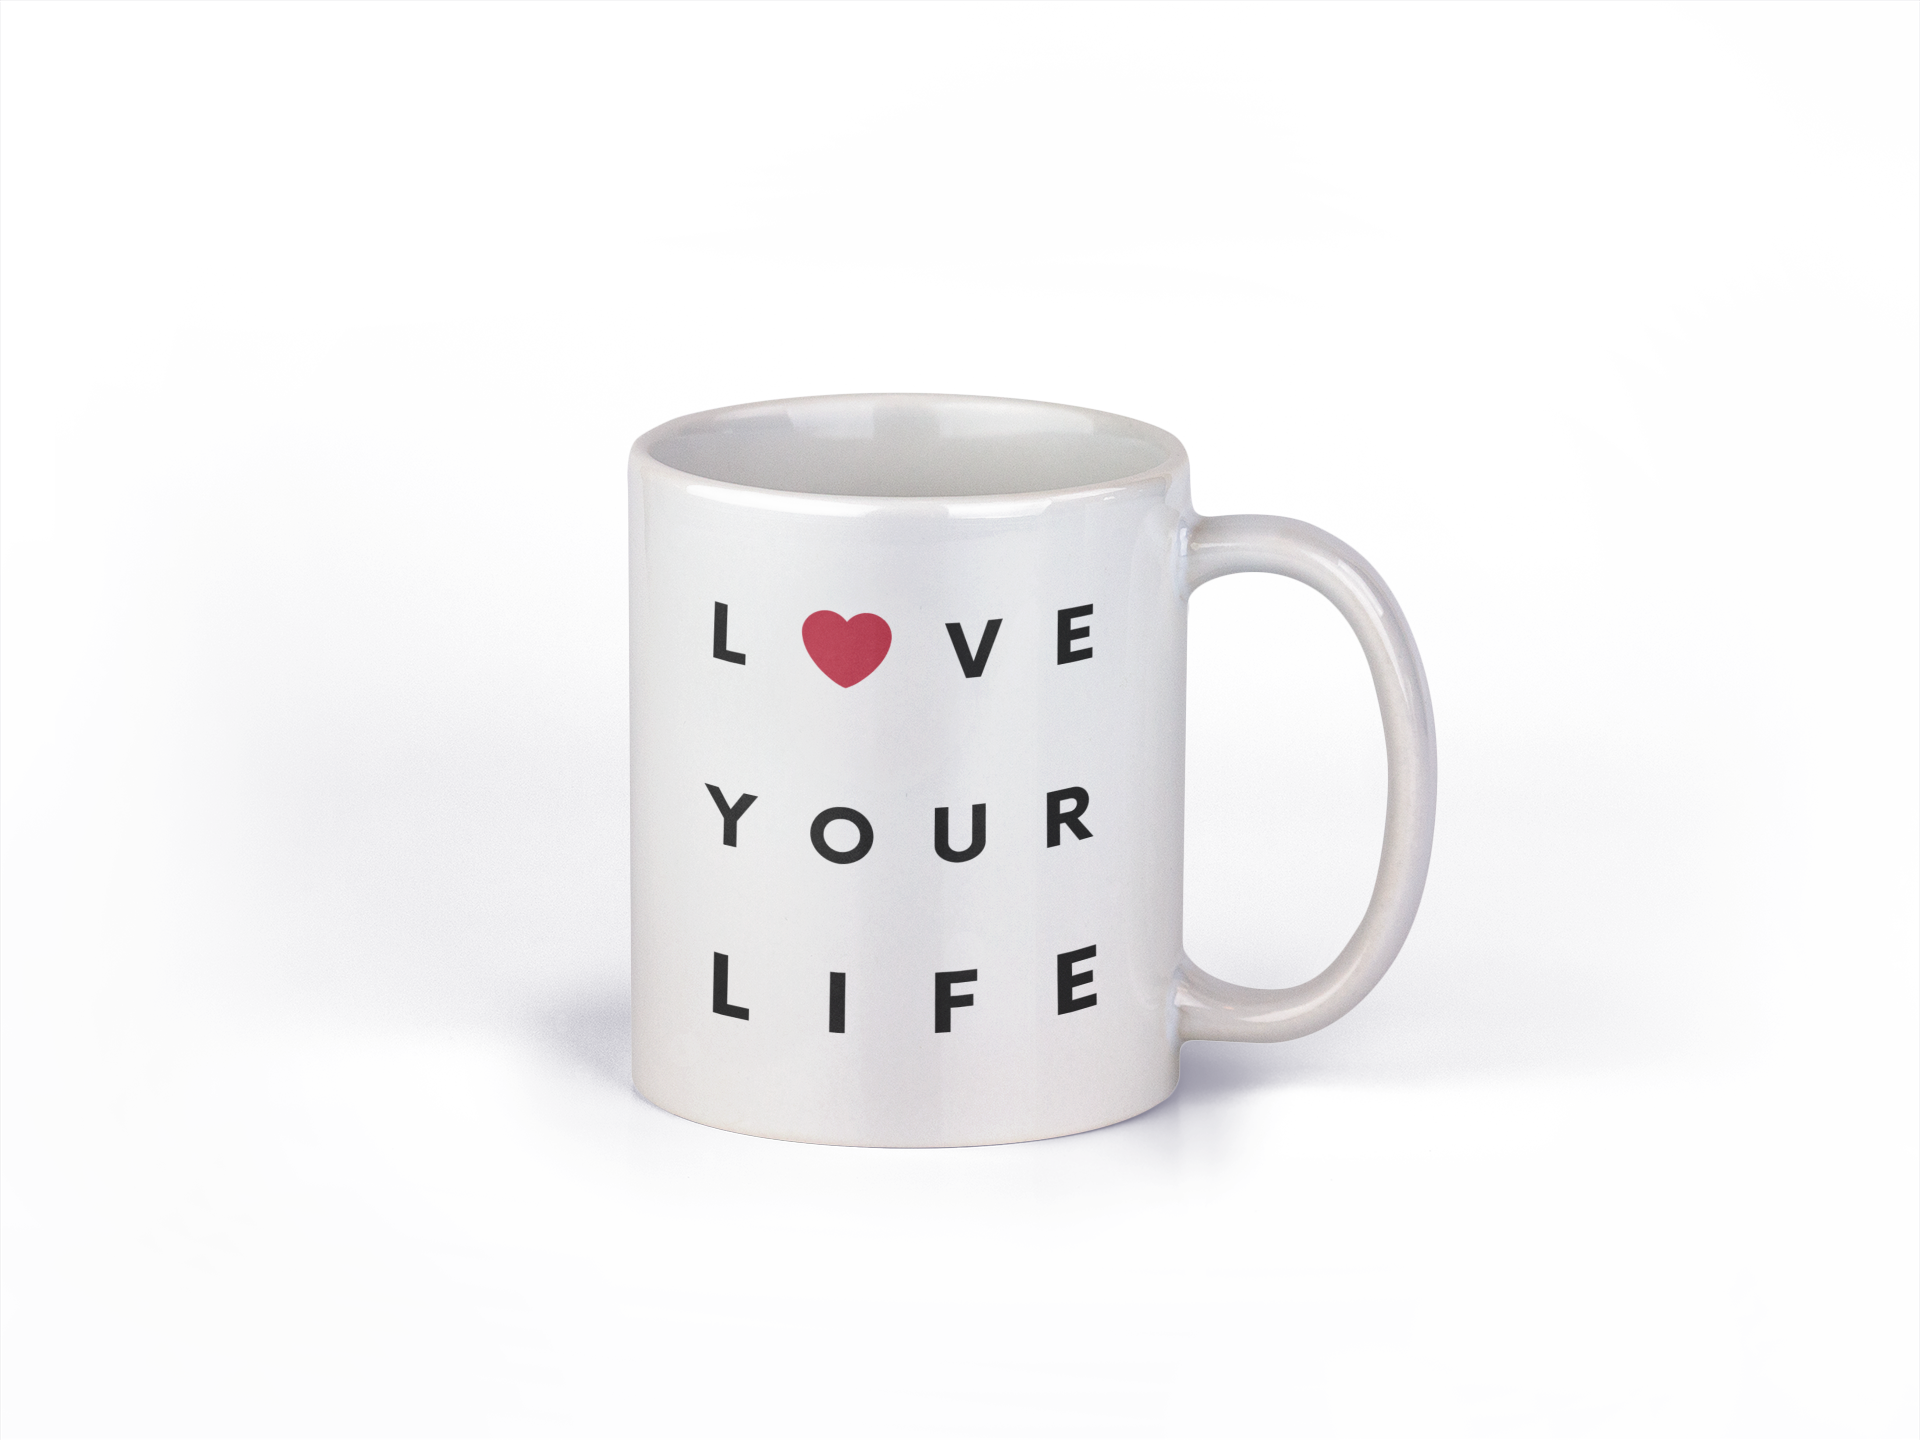 Love Your Life - Coffee Mug